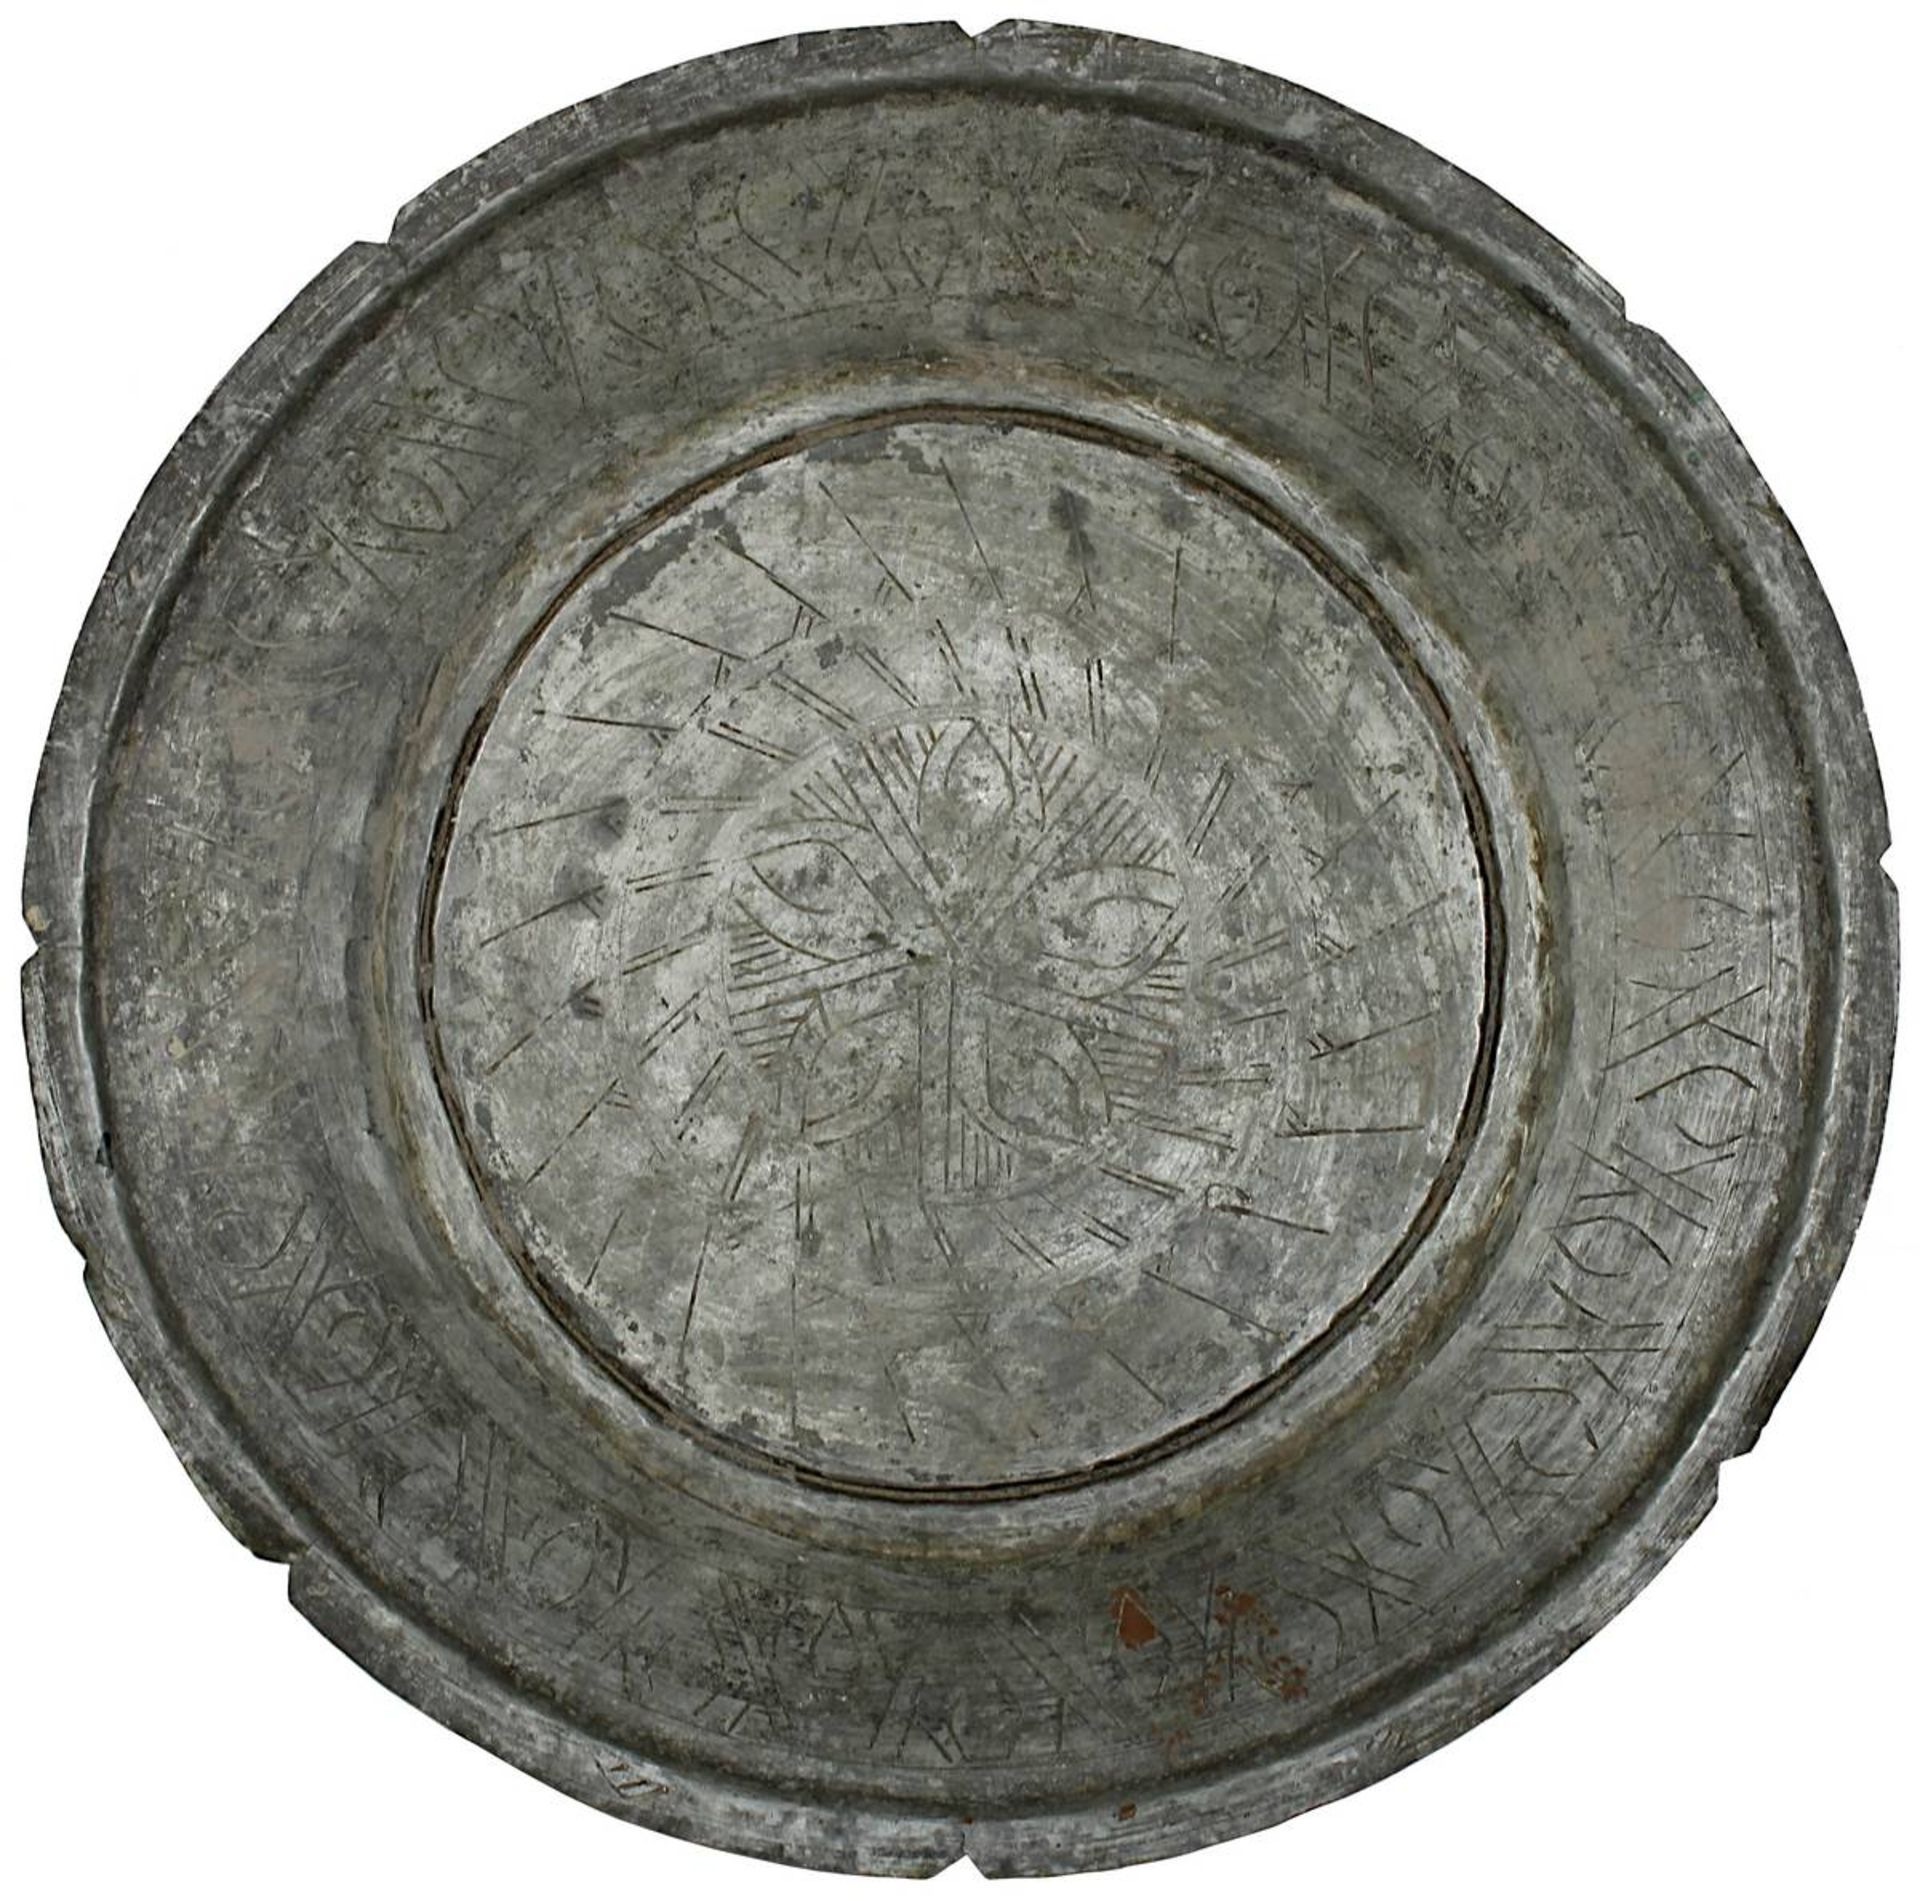 3 Servierteller aus verzinntem Kupfer, Syrien 1. H. 20. Jh., Handarbeit, reicher gravierter - Bild 2 aus 4